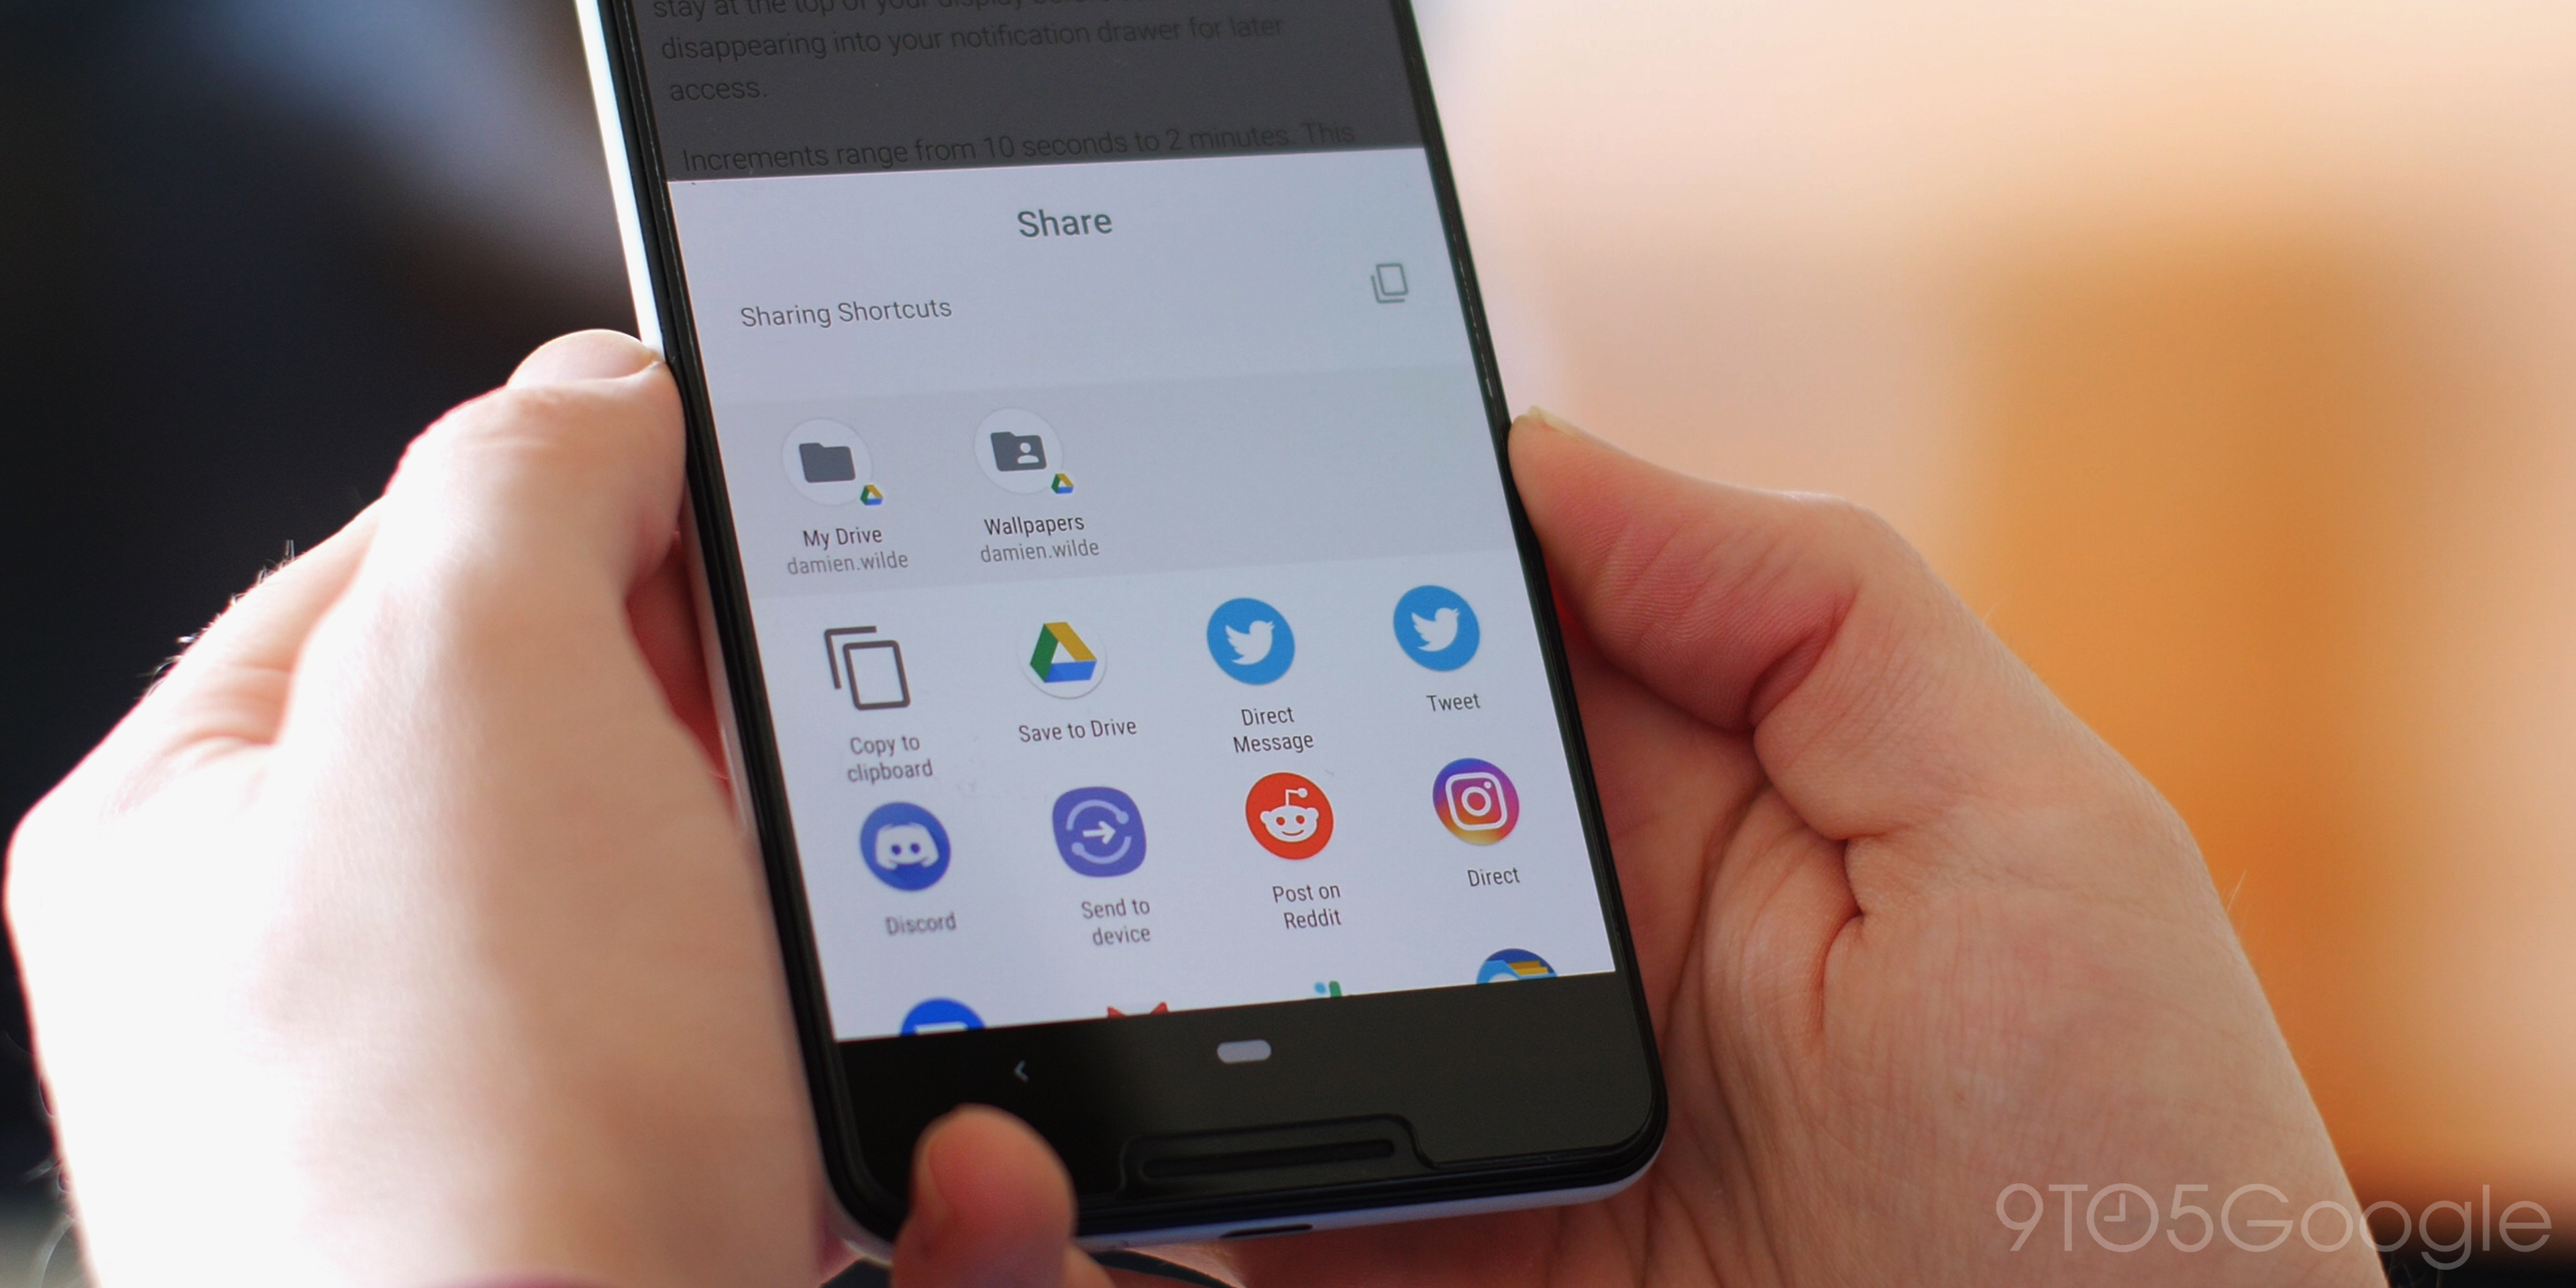 Sharing Shortcuts Android Q Beta 1